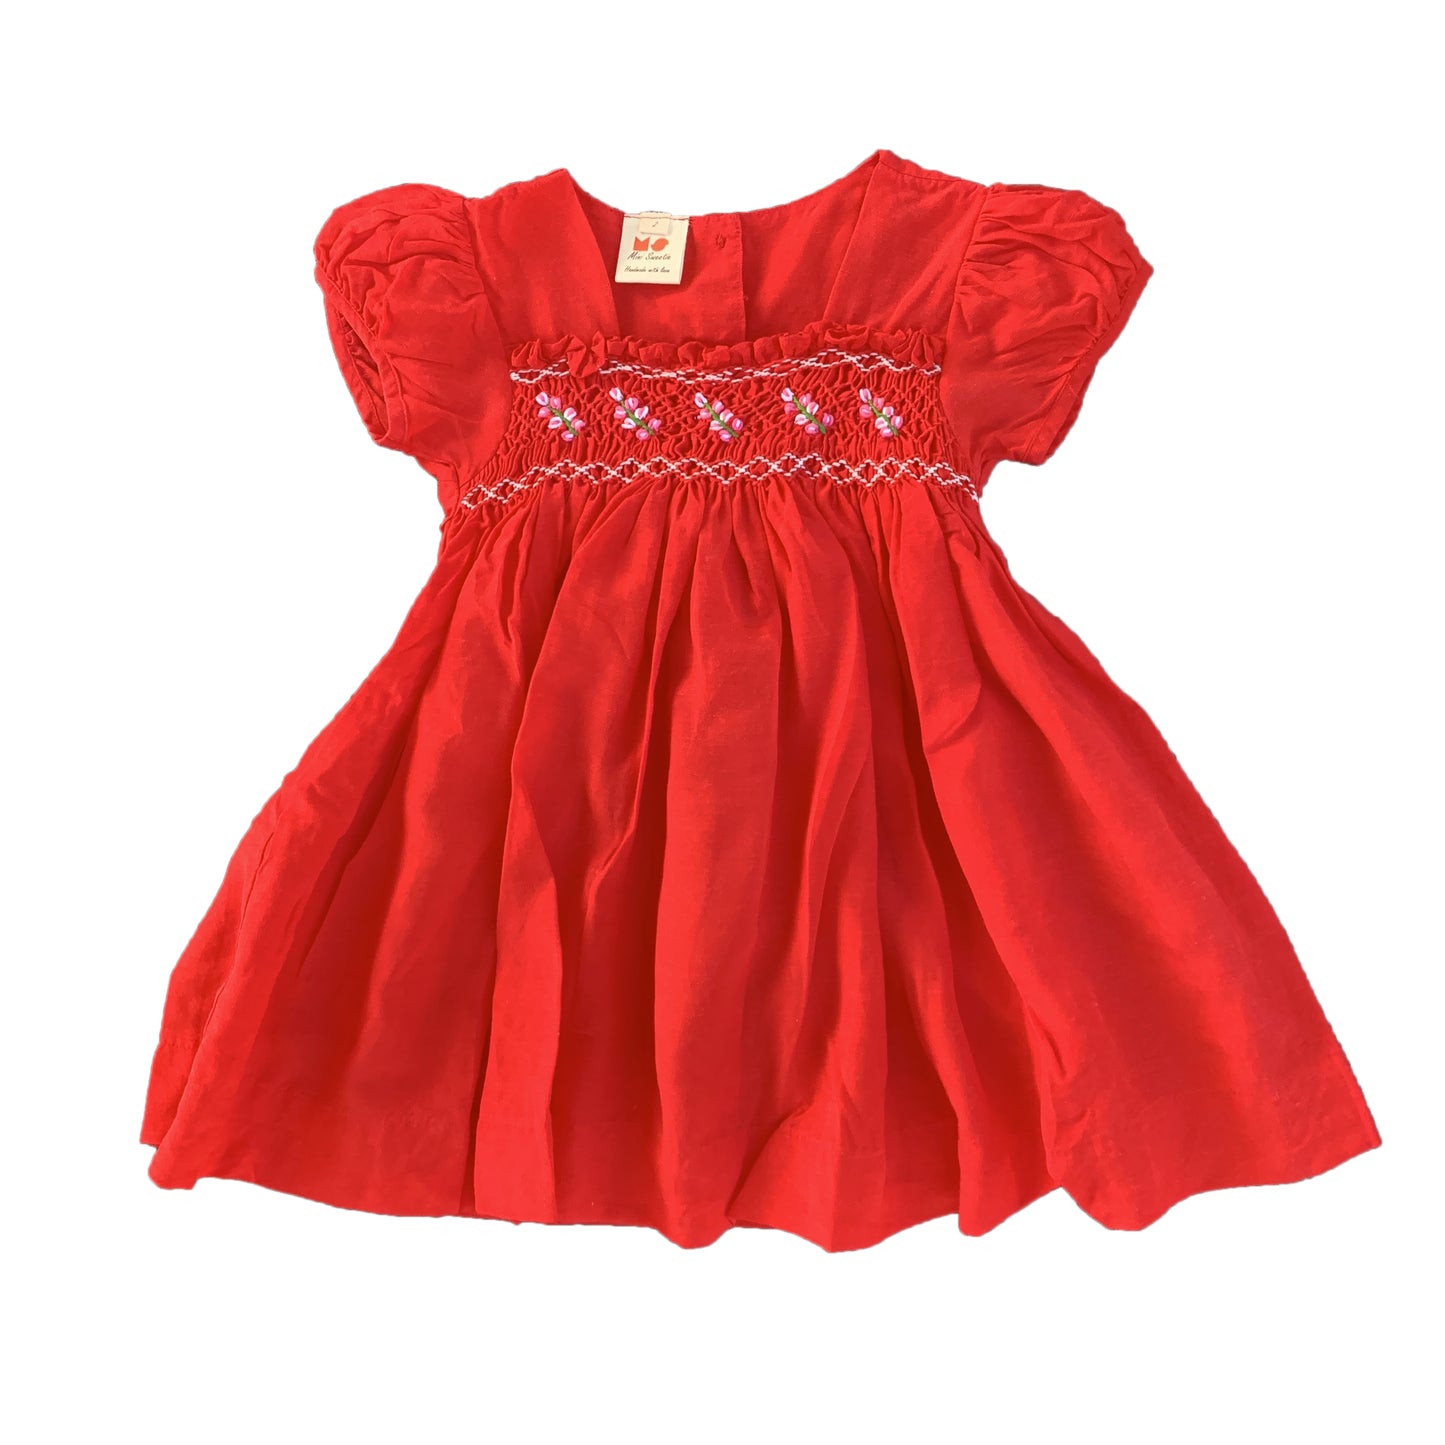 Scarlet Red Smocked Dress